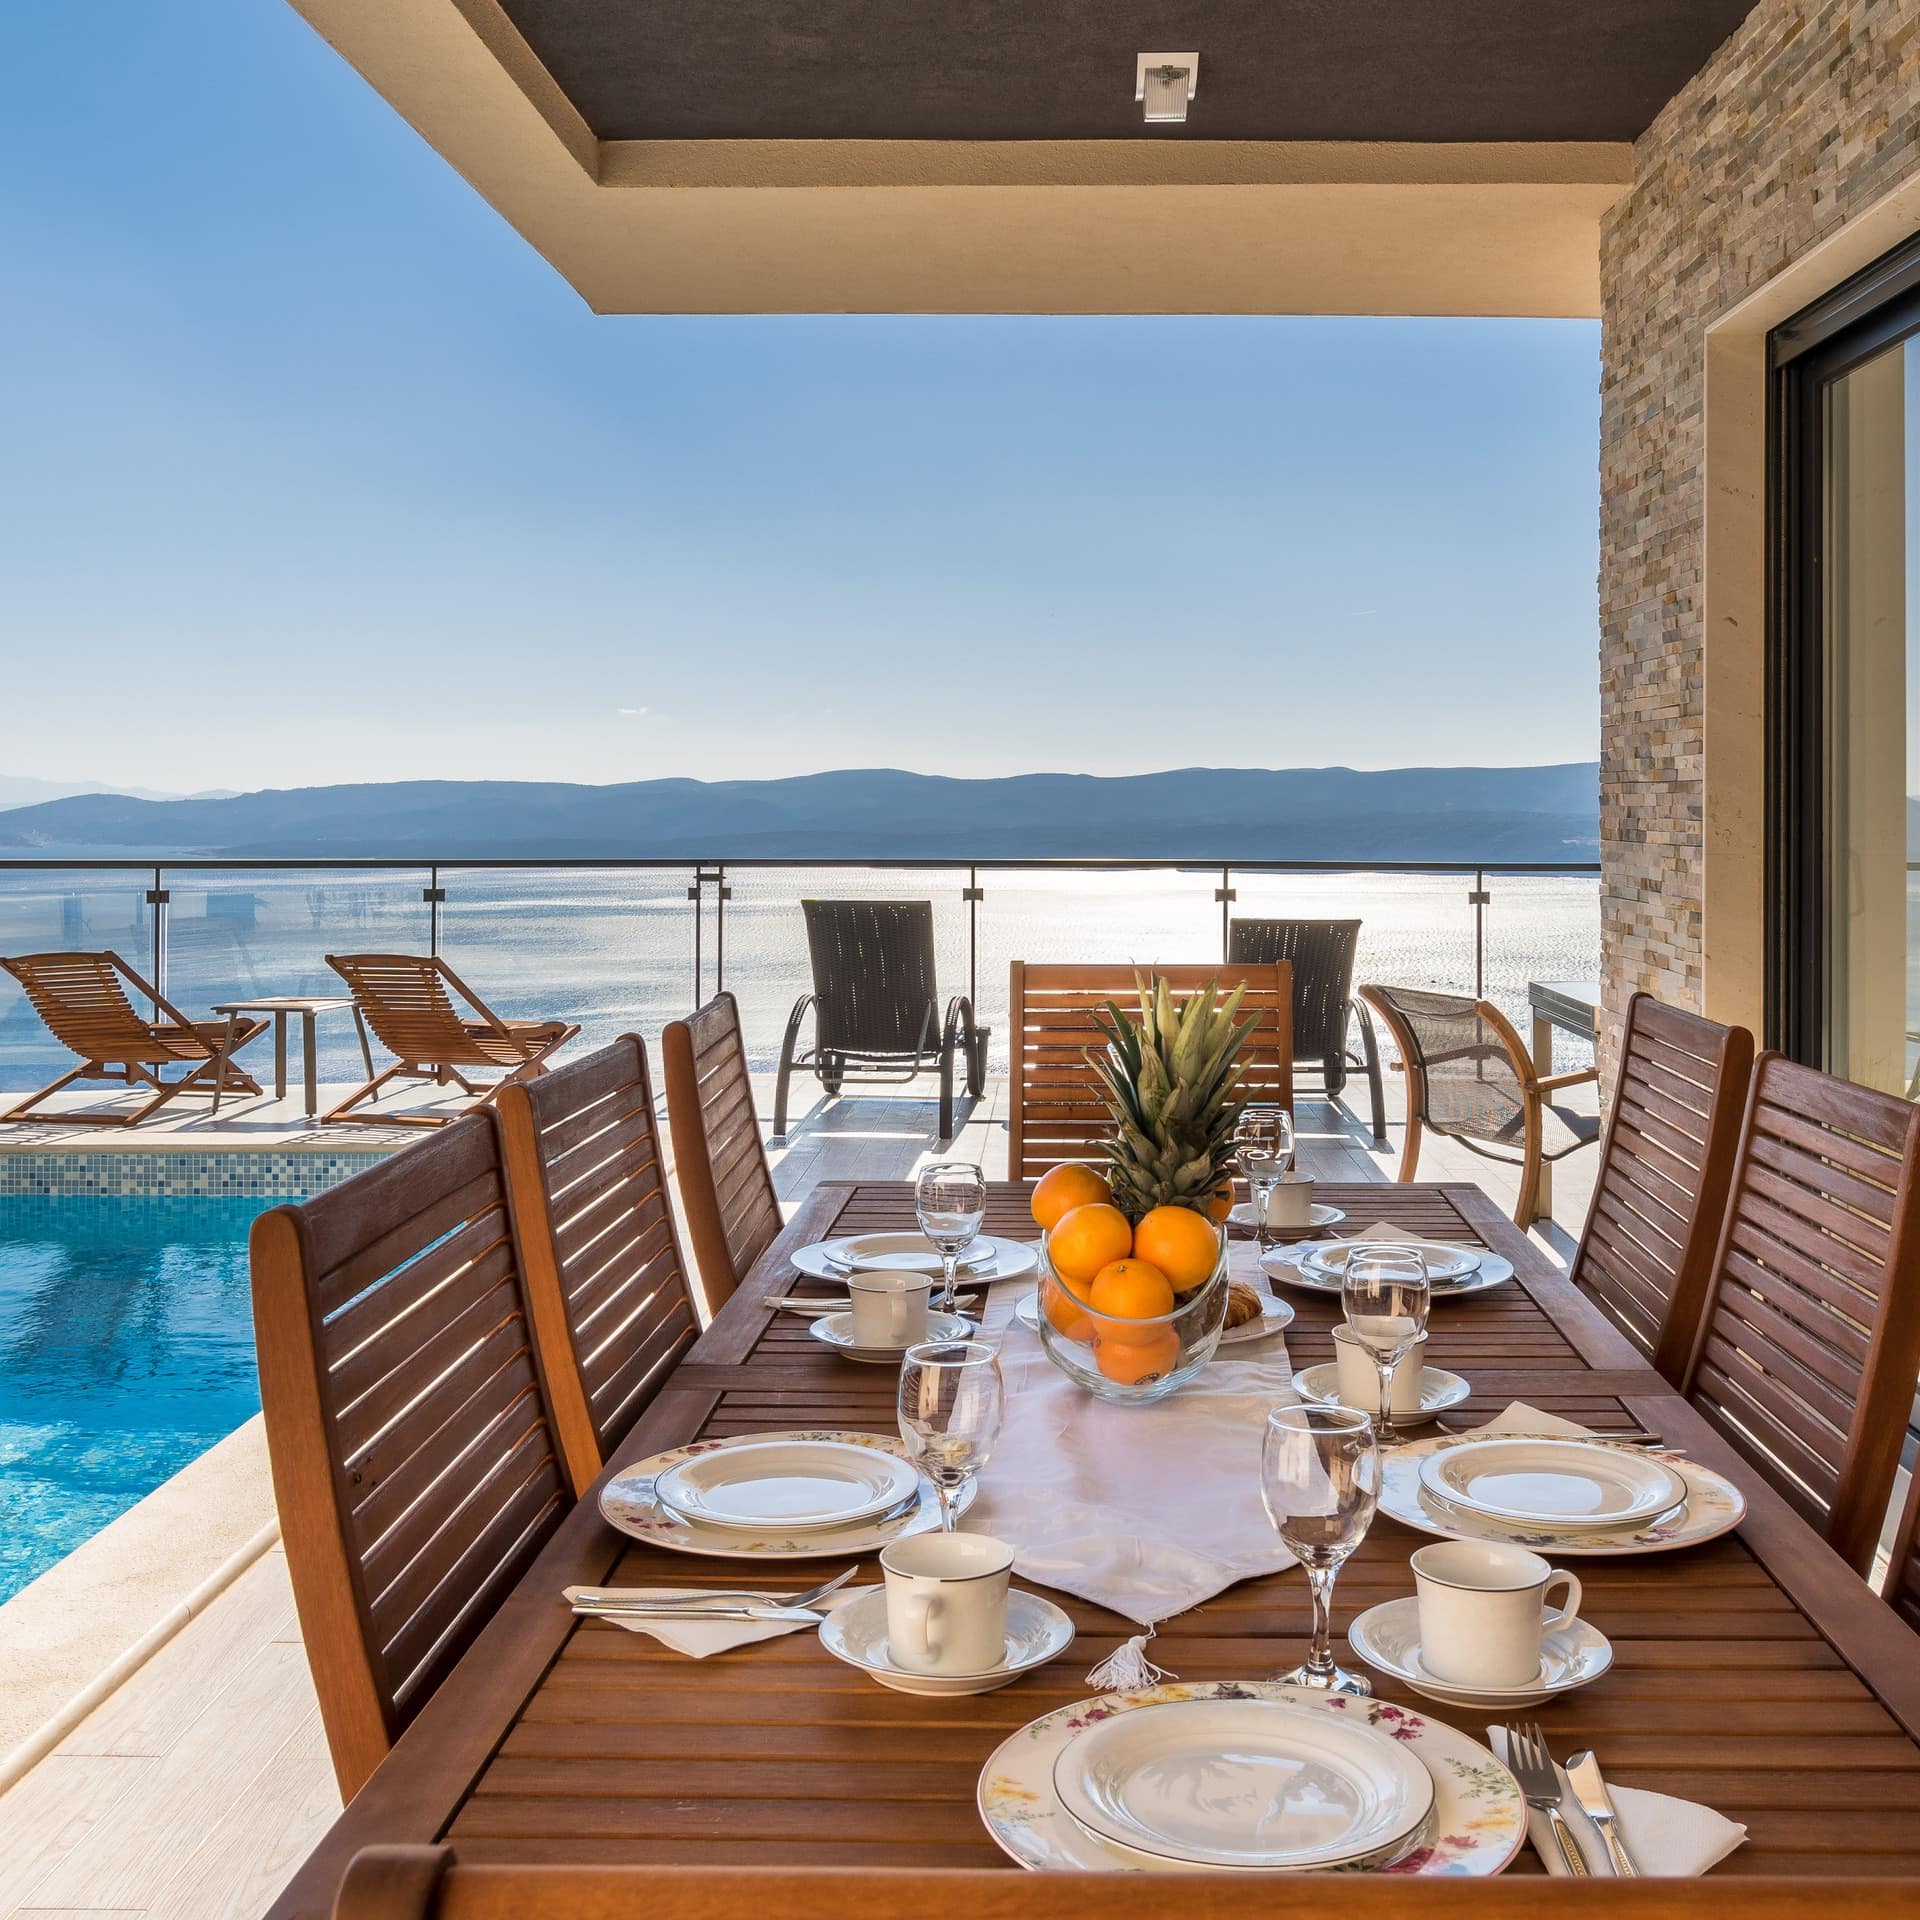 Gedeckter Frühstückstisch neben einem Außenpool mit Sonnenliegen in einem Ferienhaus in Kroatien mit Blick auf das Meer